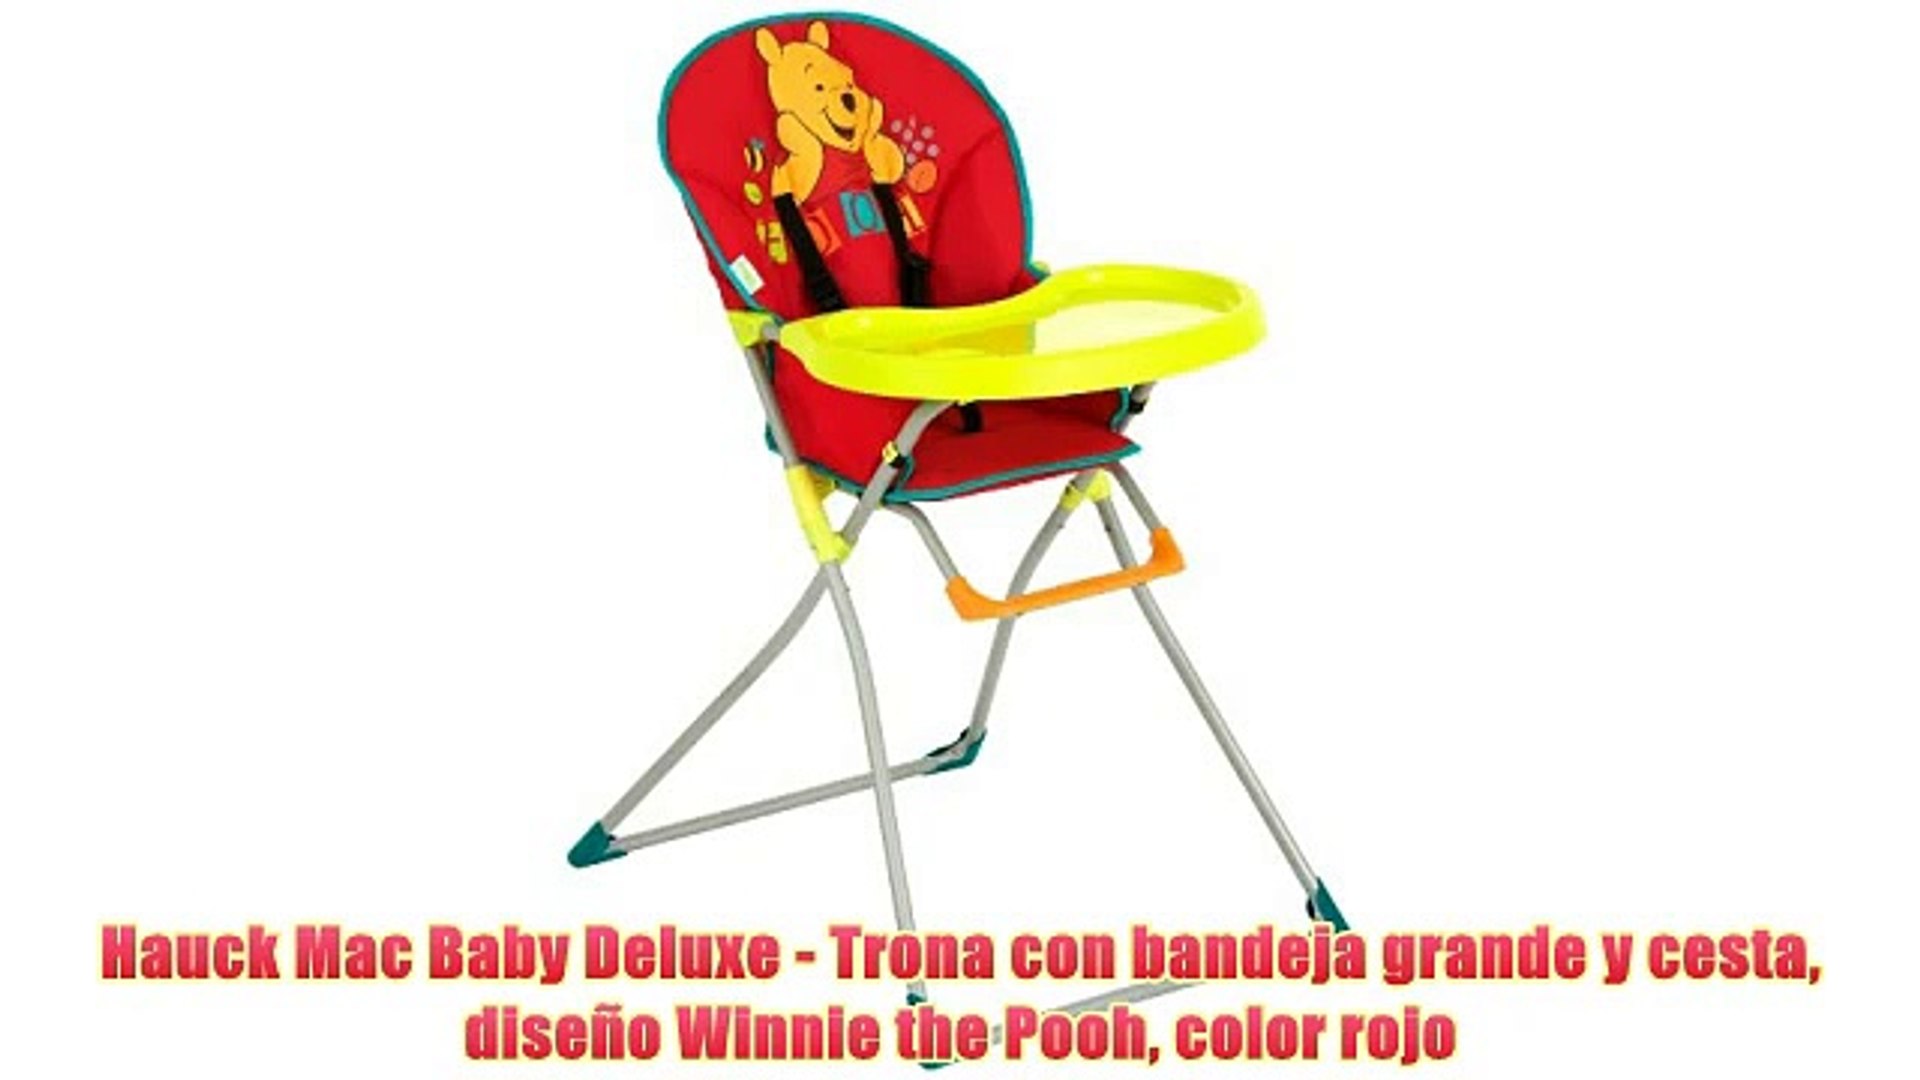 Hauck Mac Baby Deluxe - Trona con bandeja grande y cesta diseño Winnie the  Pooh color rojo - video Dailymotion